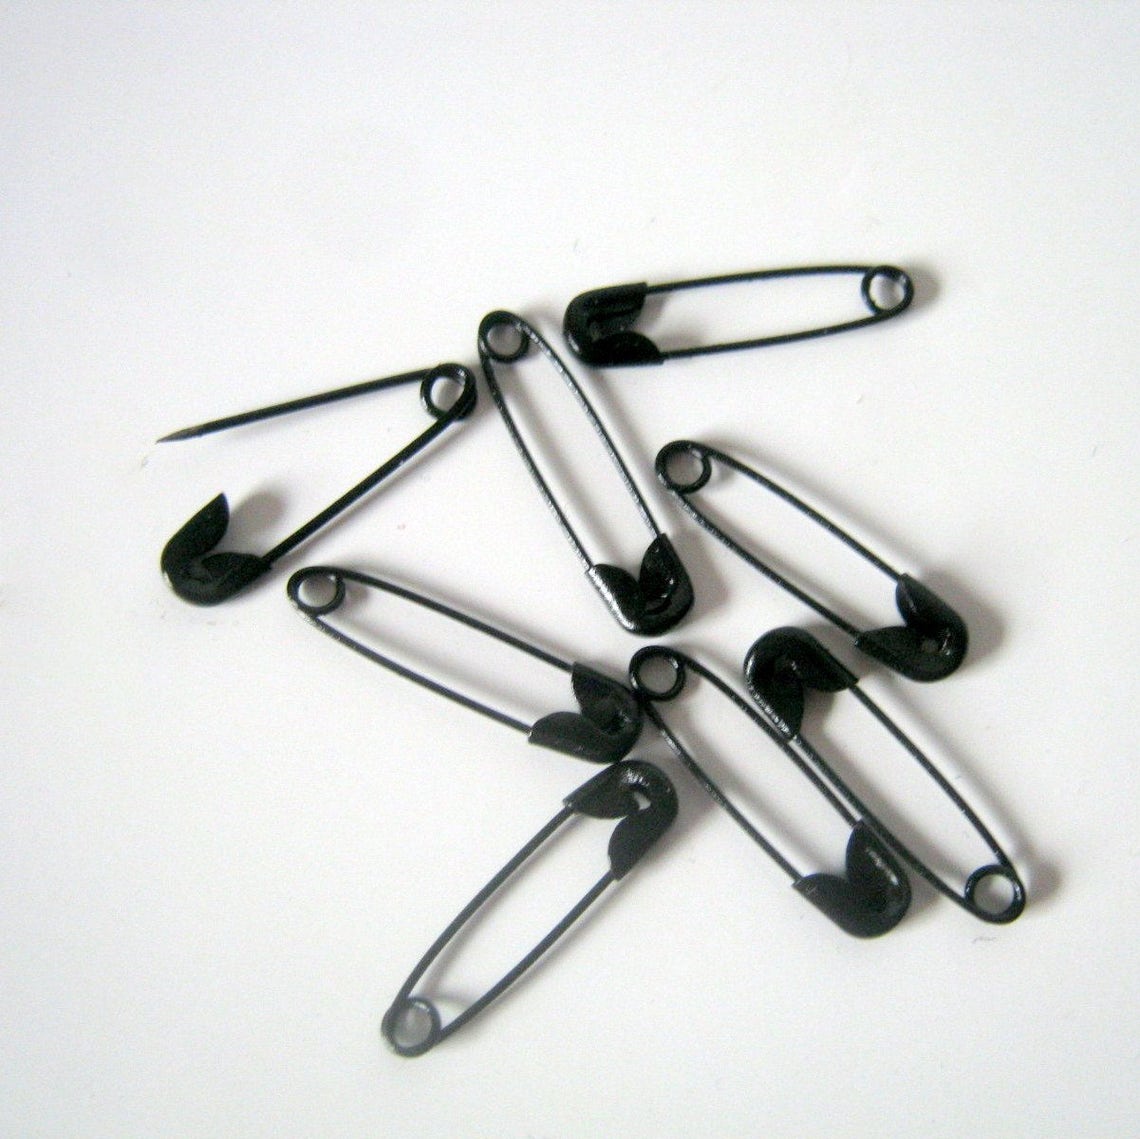 100 Black Safety Pins 18x5mm Supplies Craft Supplies | Etsy